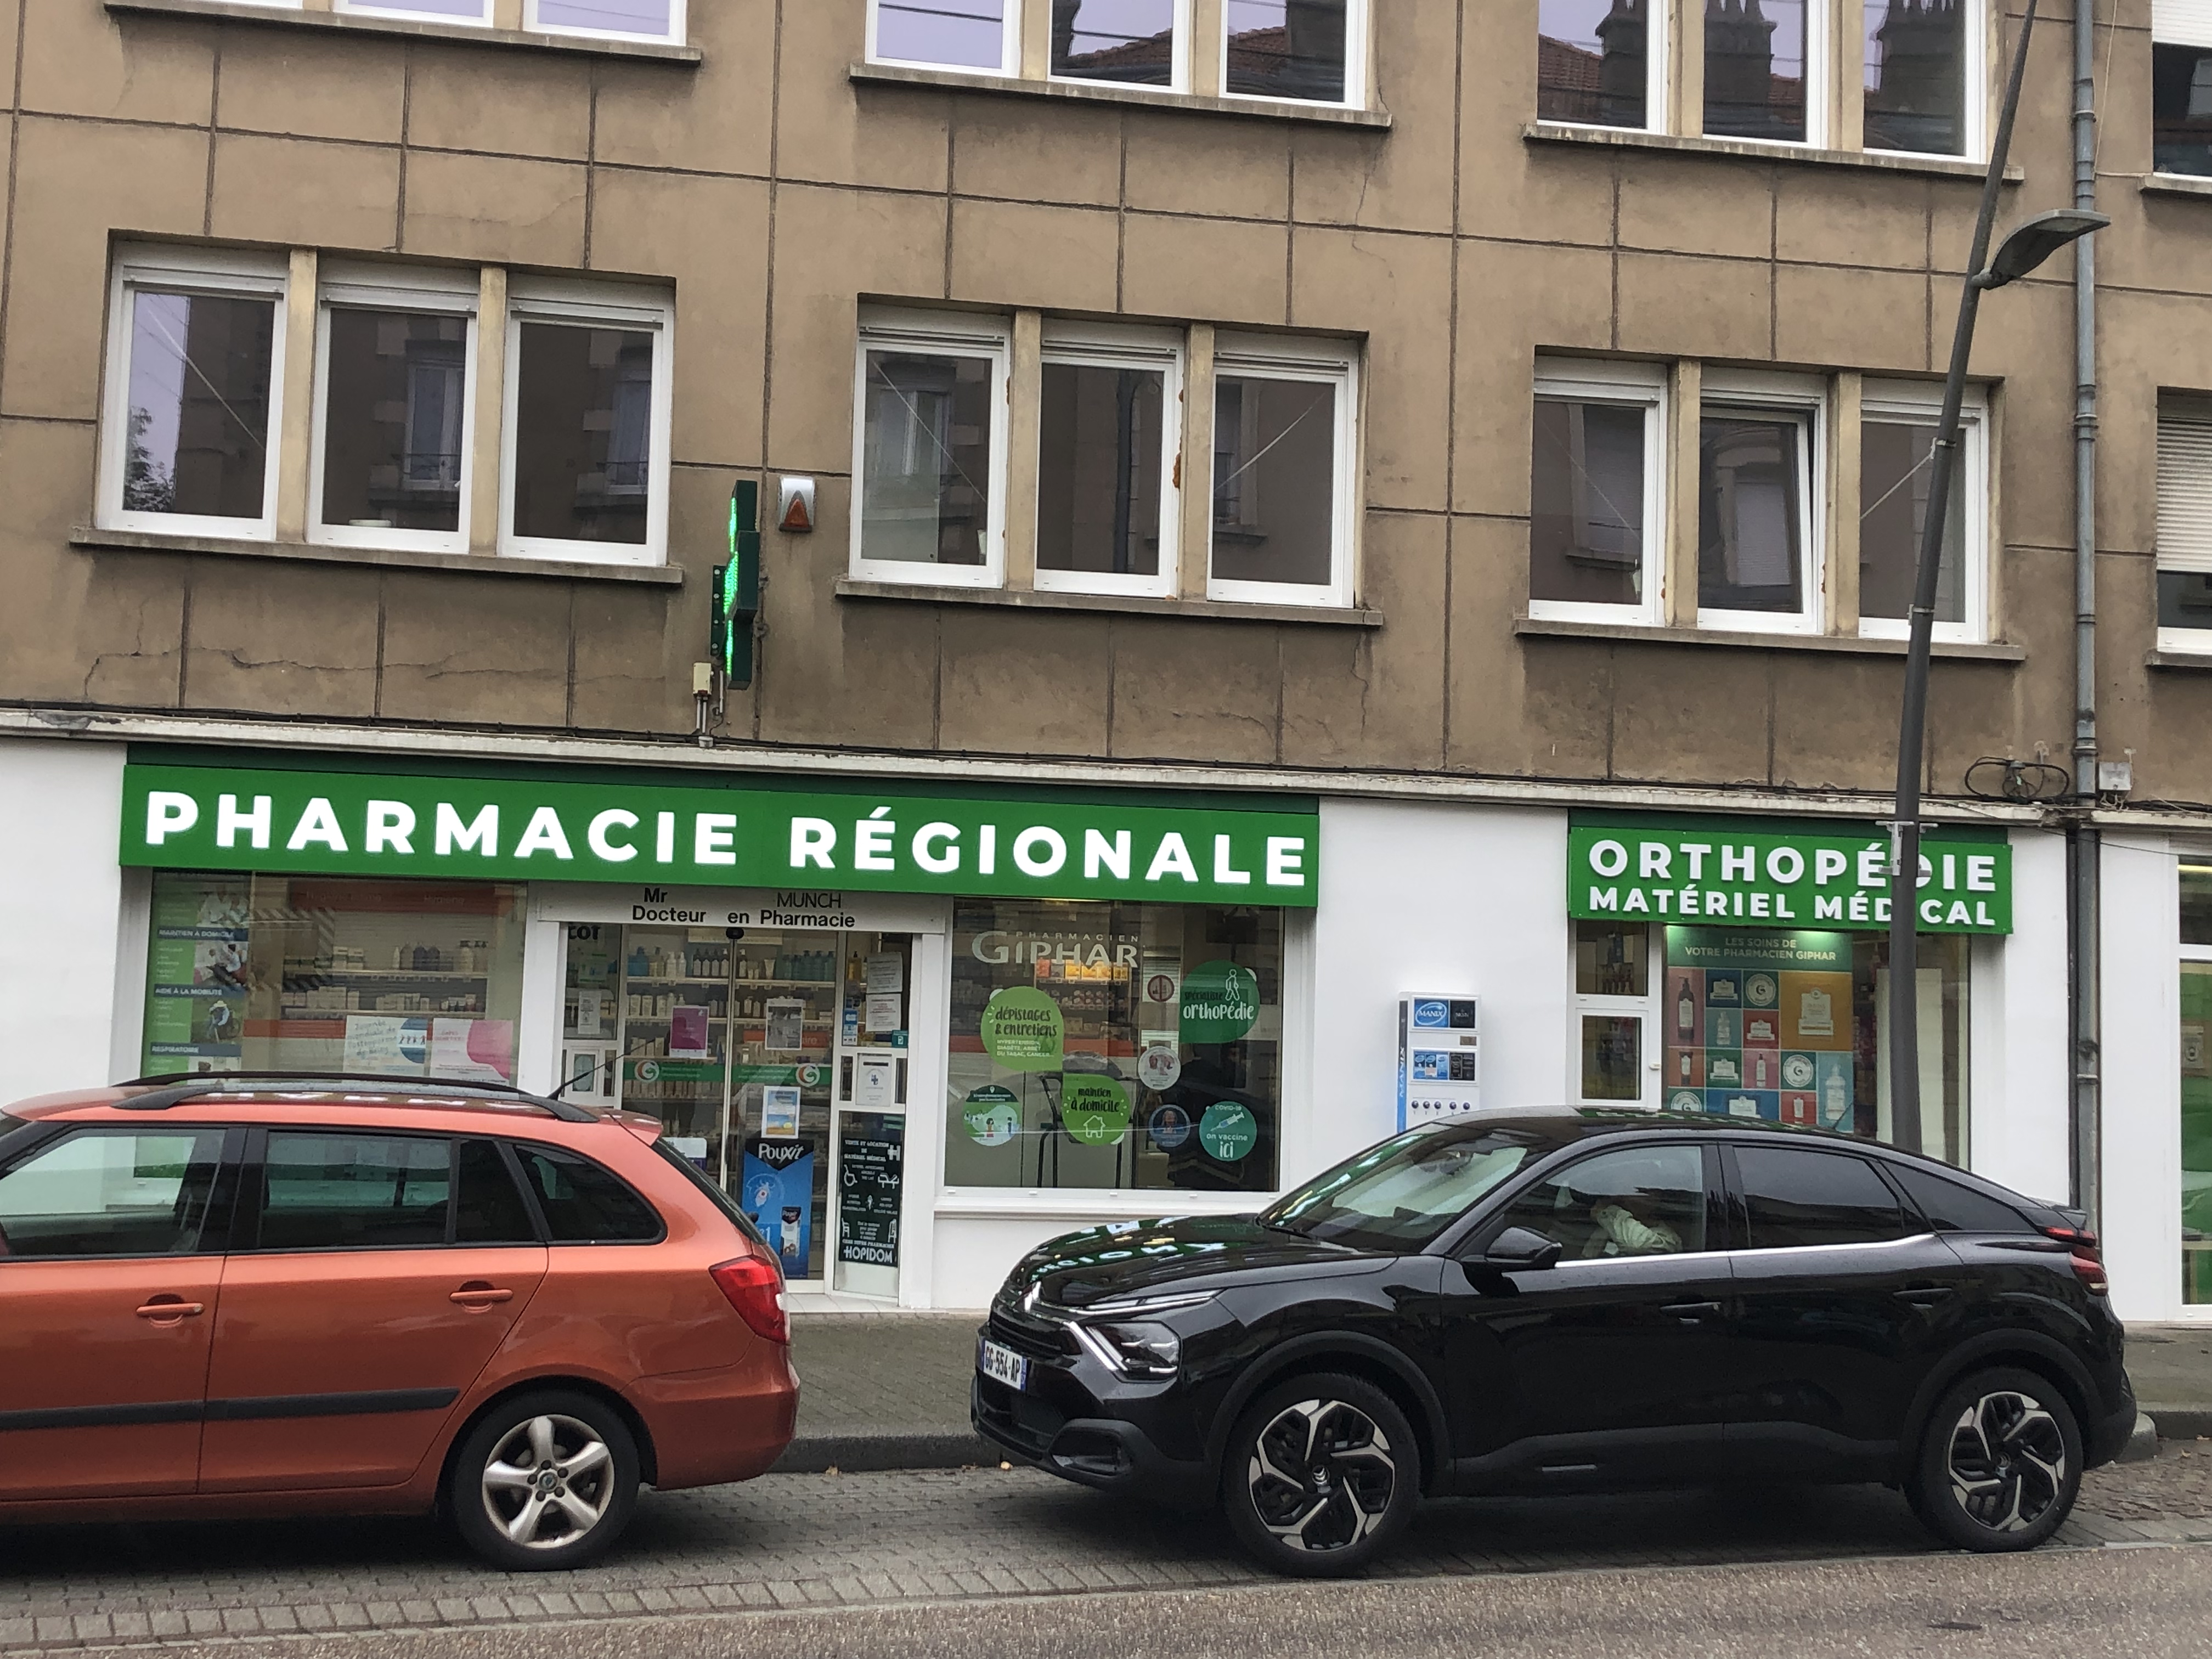 Pharmacie régionale.JPG